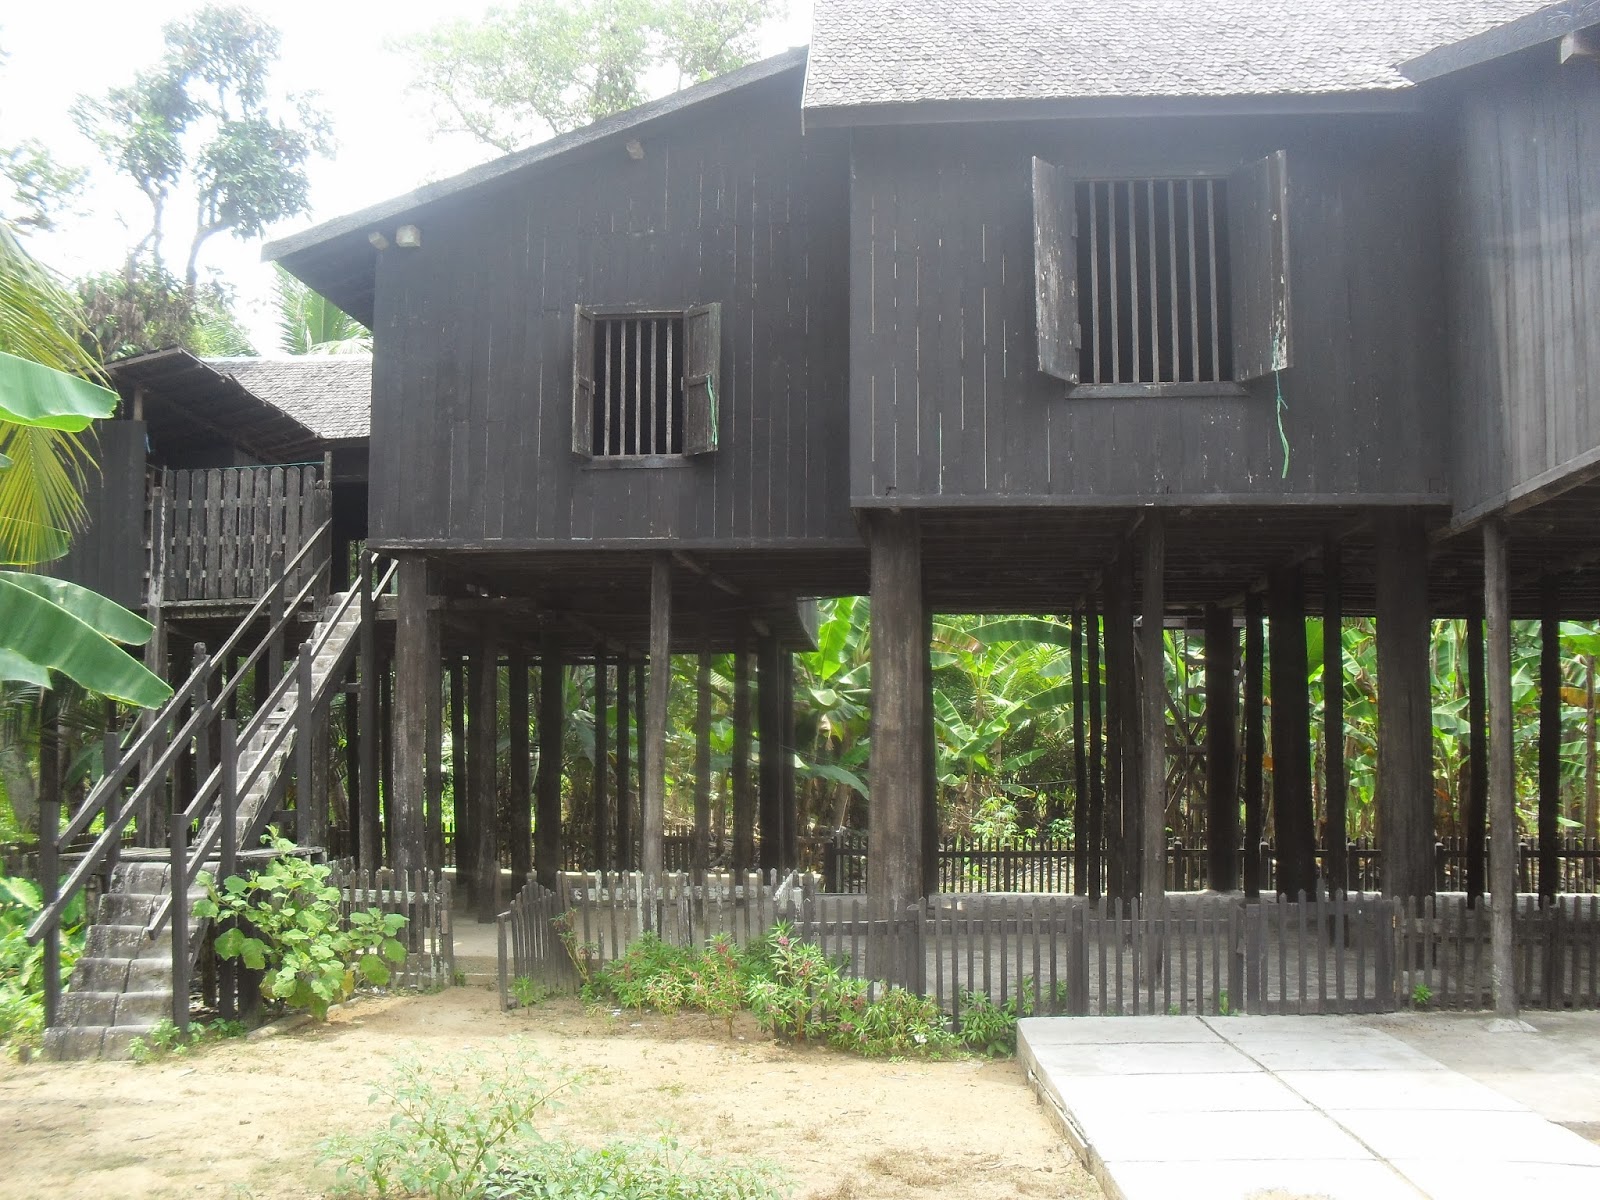 Download this Rumah Betang Tua Desa Buntoi picture